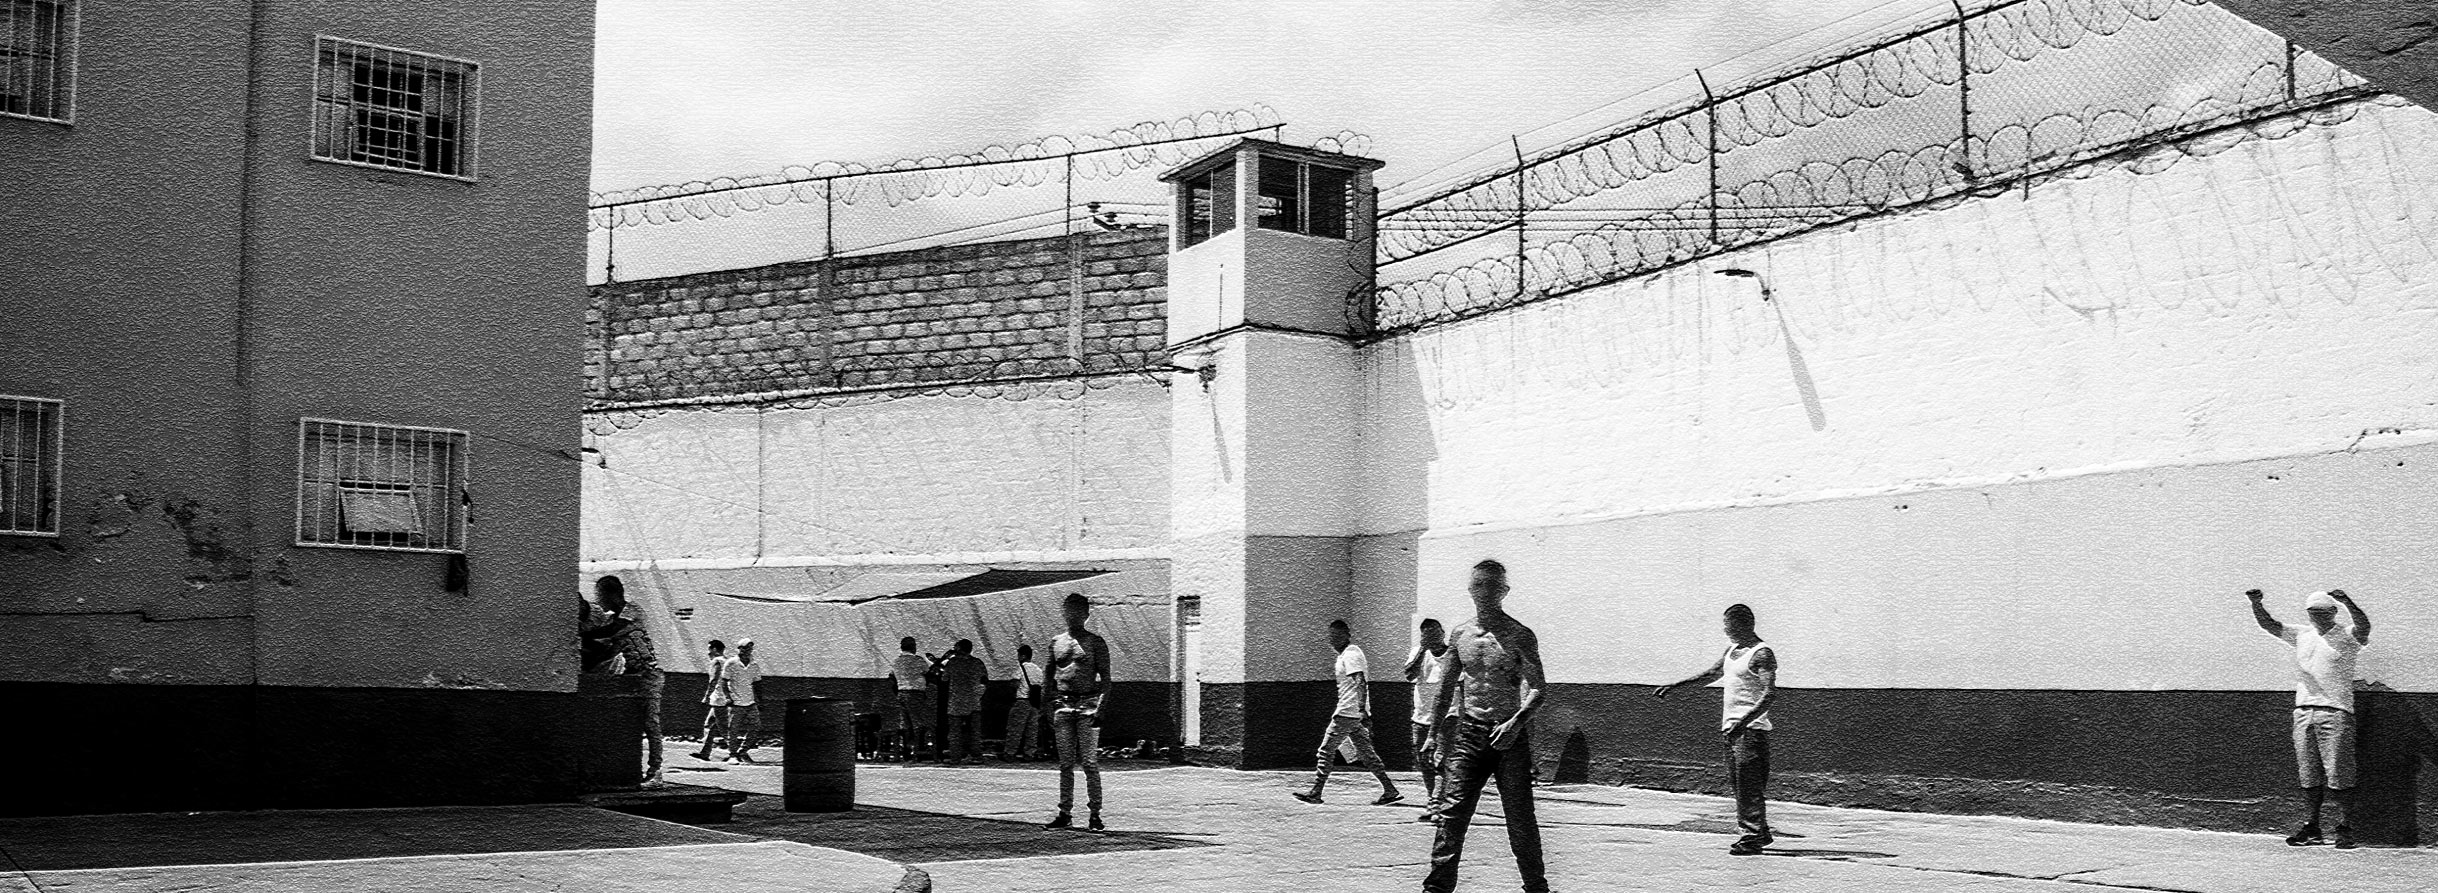 Modelos penitenciarios y sus beneficios preliberacionales.